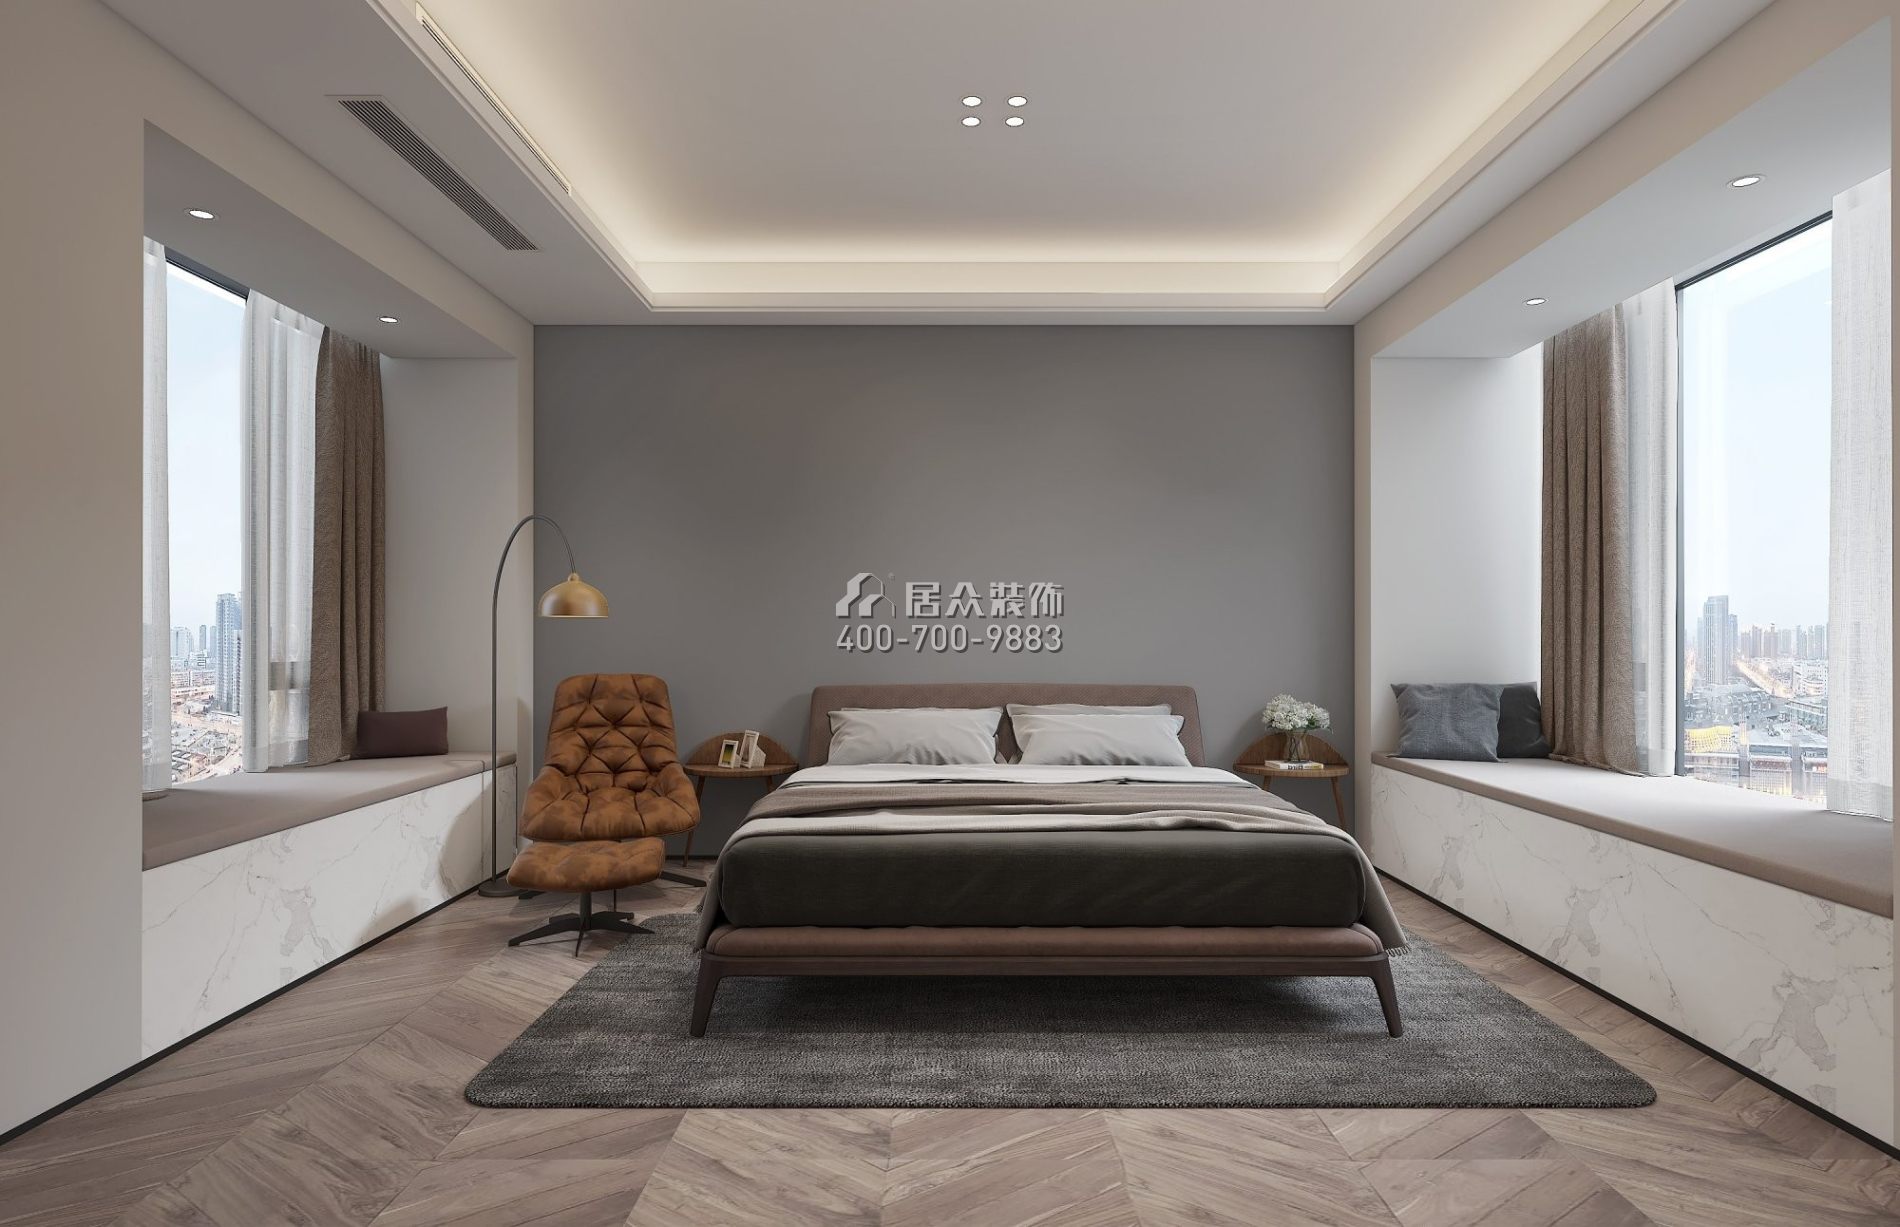 天鵝堡120平方米現代簡約風格平層戶型臥室裝修效果圖